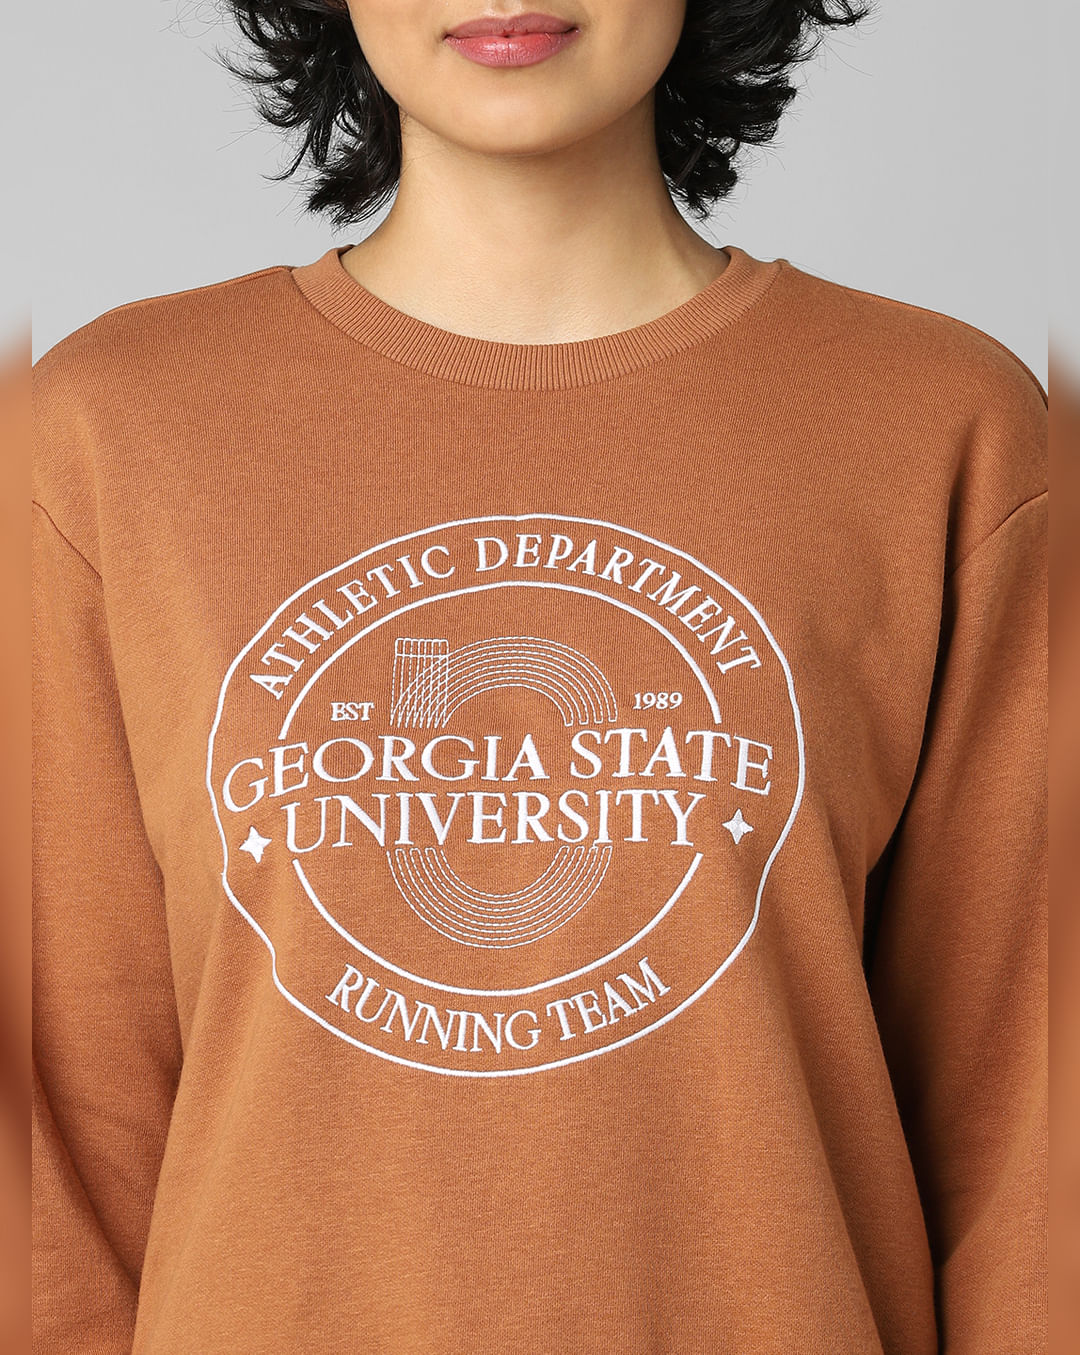 Buy Brown University Sweatshirt Online In India -  India